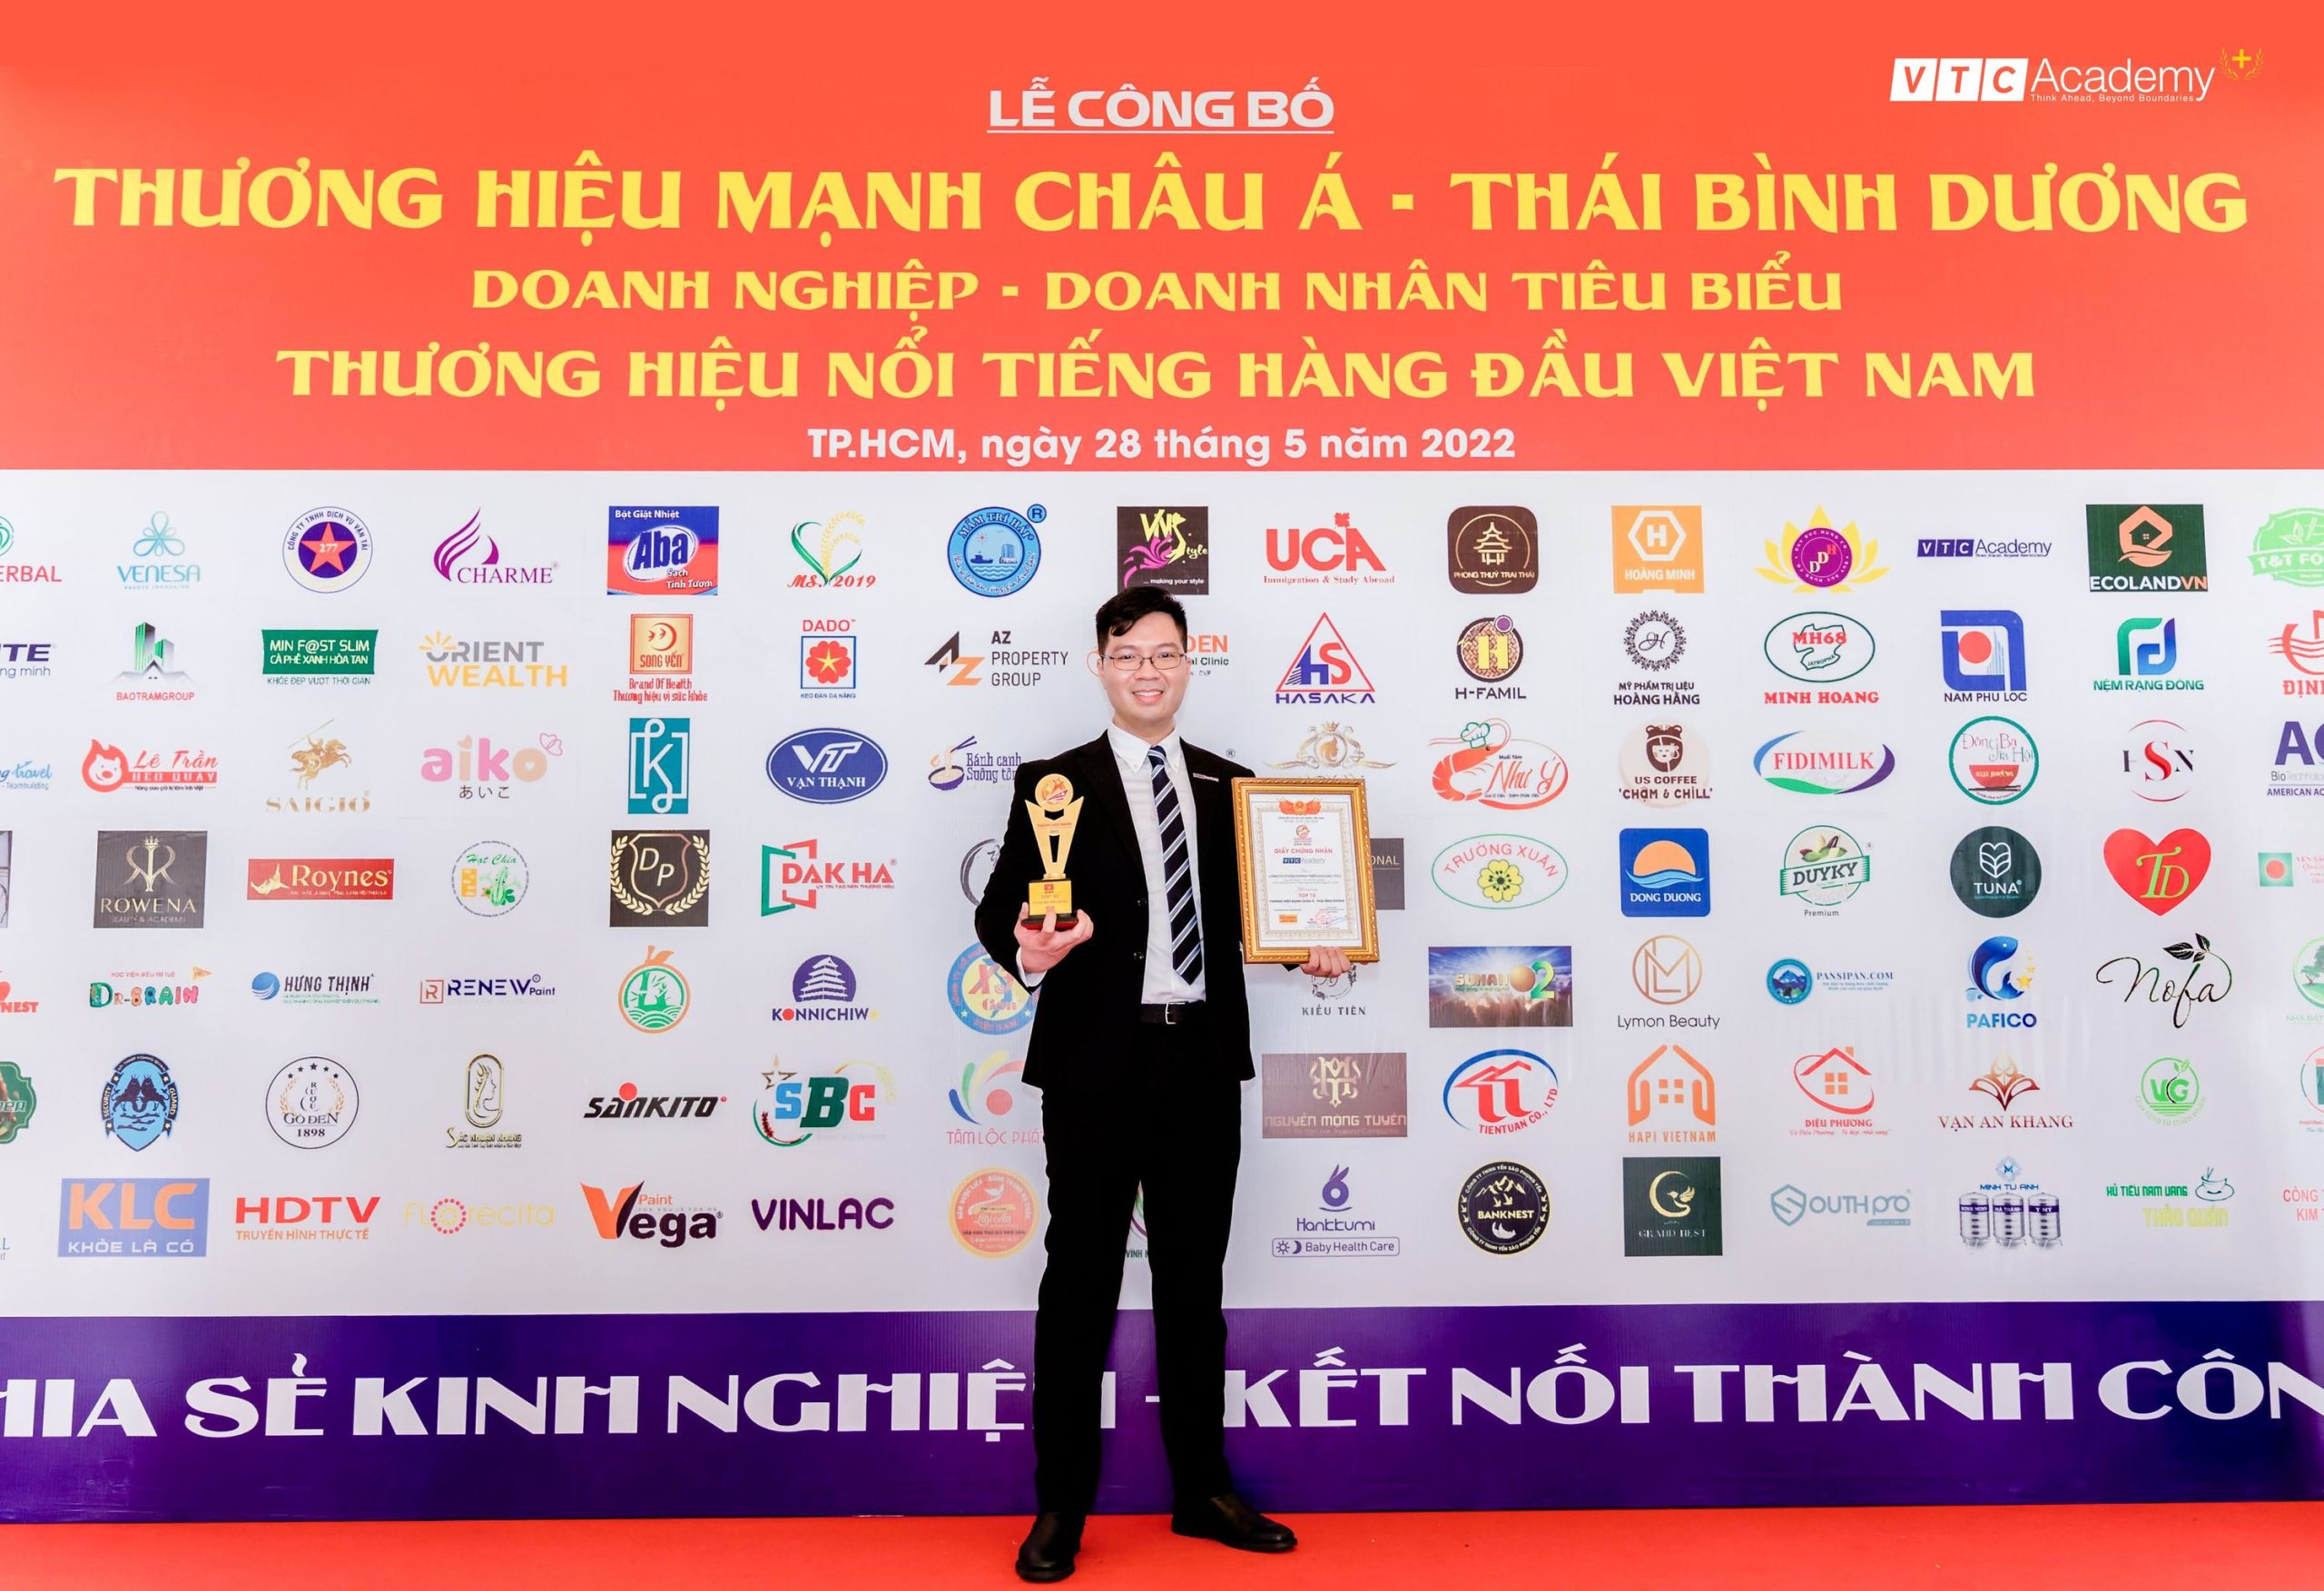 Ông Hoàng Việt Tân, đại diện VTC Academy, nhận cúp và chứng nhận từ ban tổ chức.